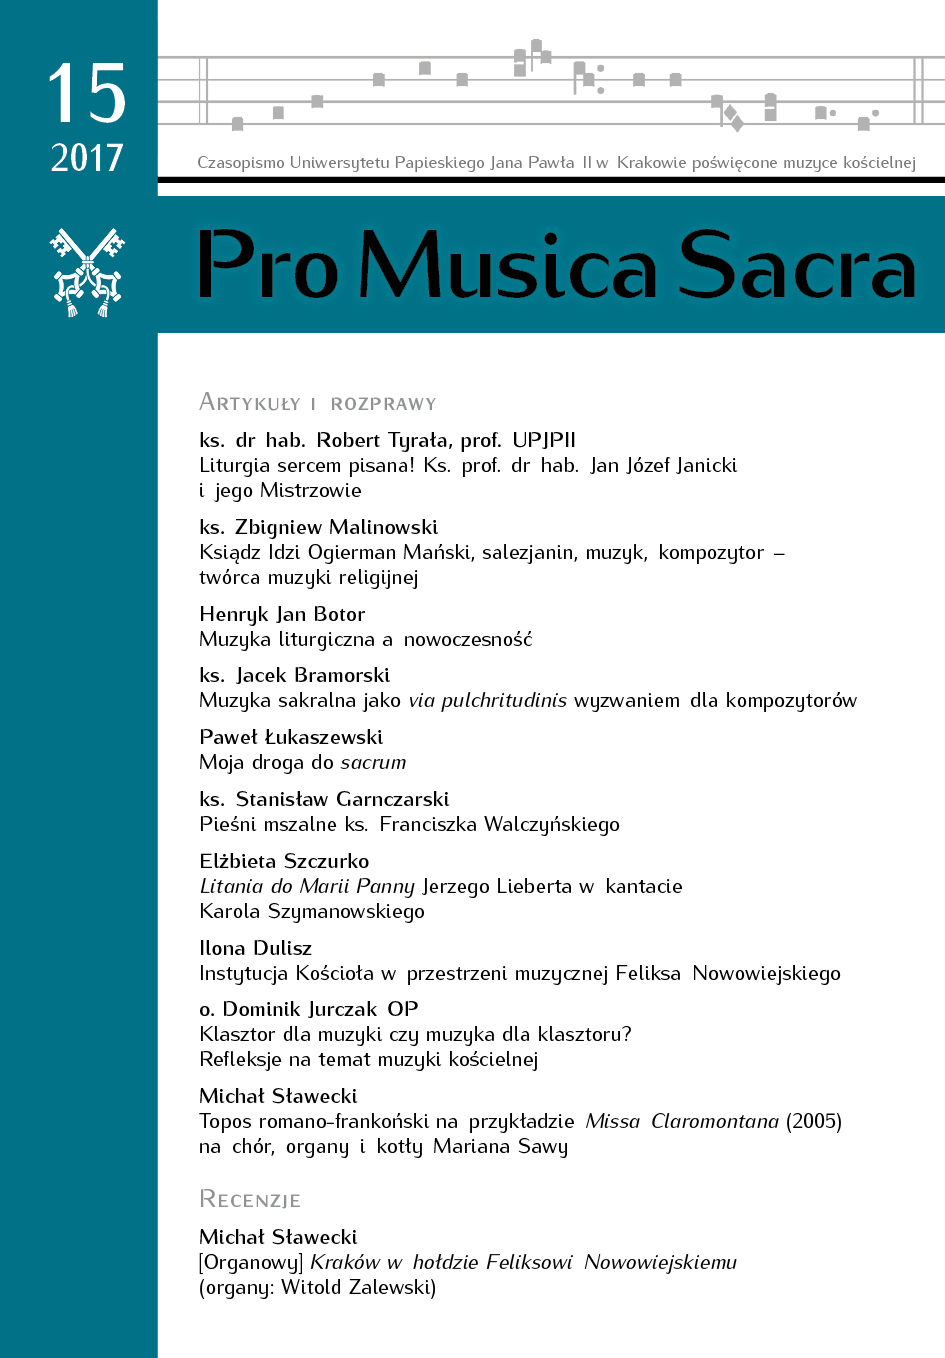 [Organ] Cracow in tribute to Feliks Nowowiejski (organ: Witold Zalewski) Cover Image